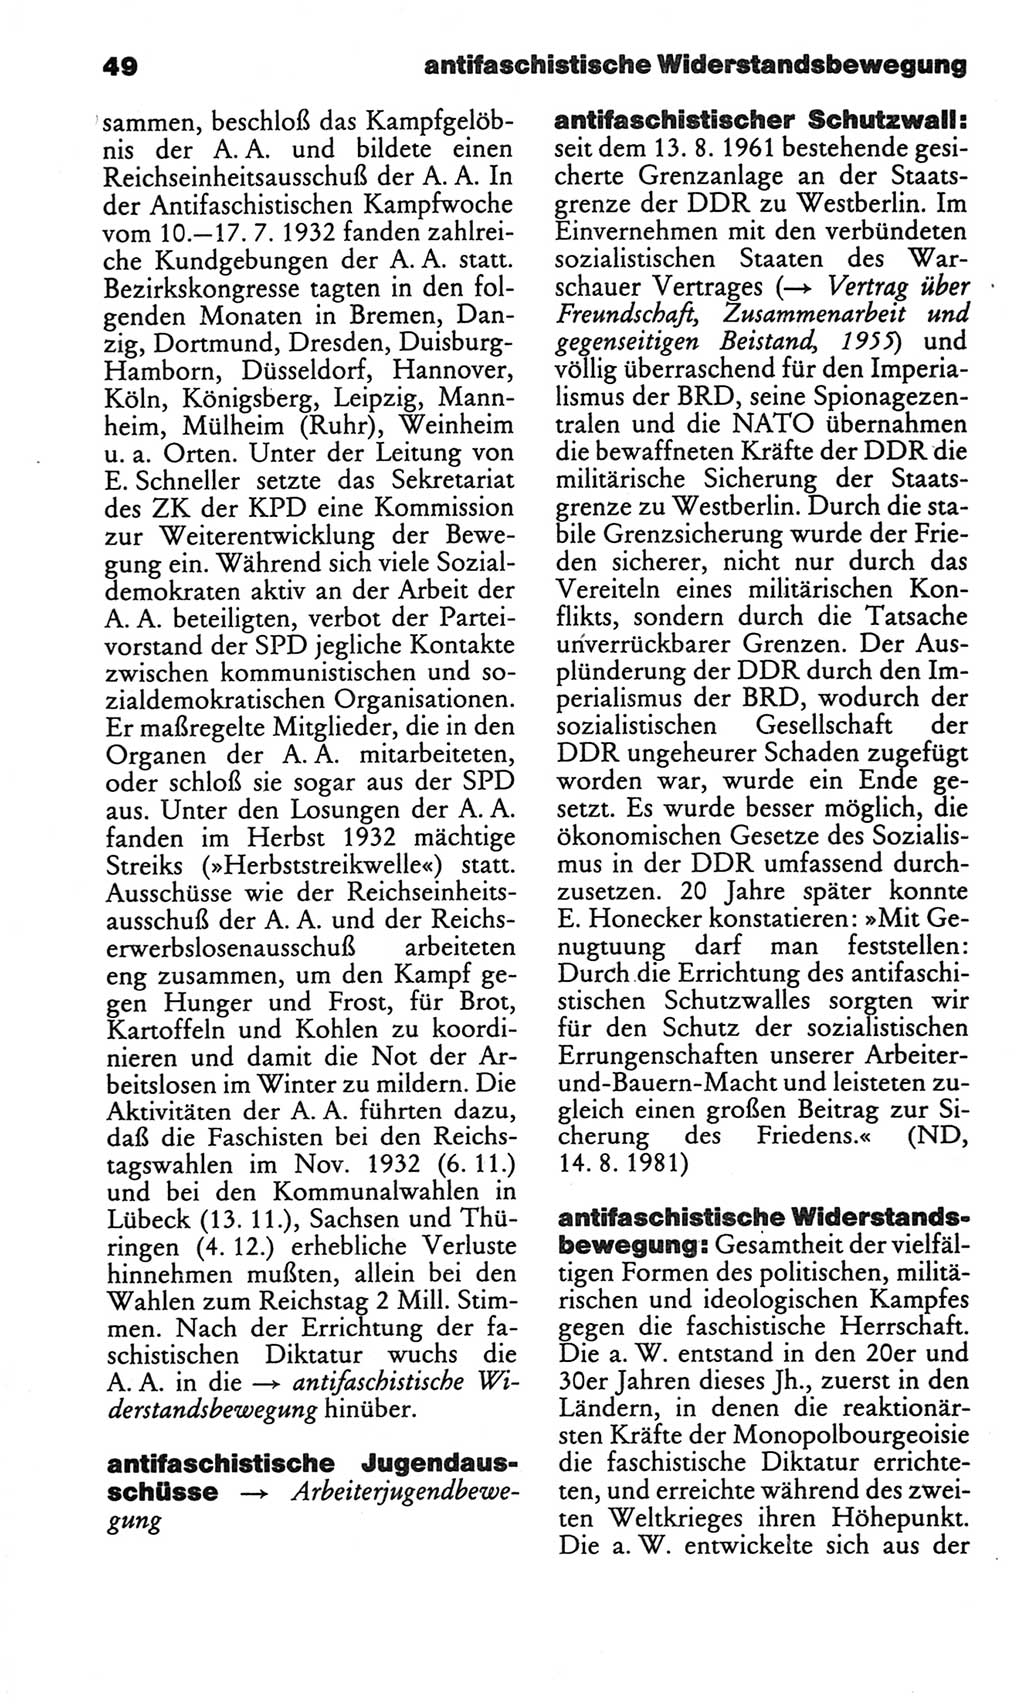 Kleines politisches Wörterbuch [Deutsche Demokratische Republik (DDR)] 1986, Seite 49 (Kl. pol. Wb. DDR 1986, S. 49)